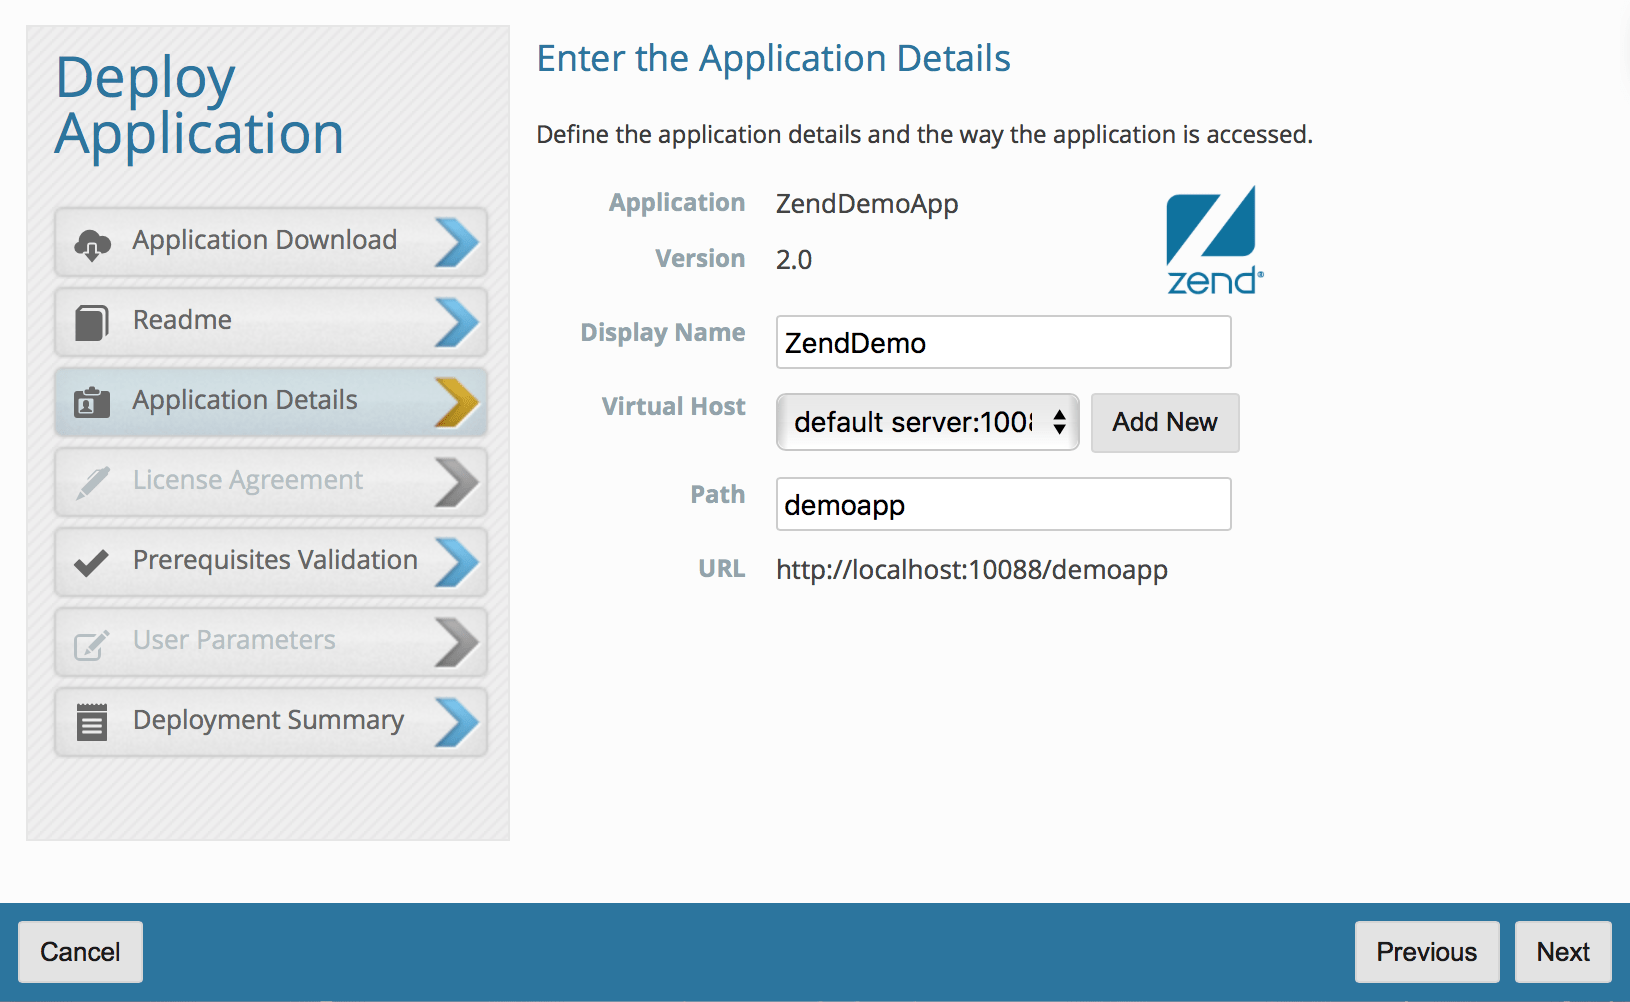 Enter Zend demo app details